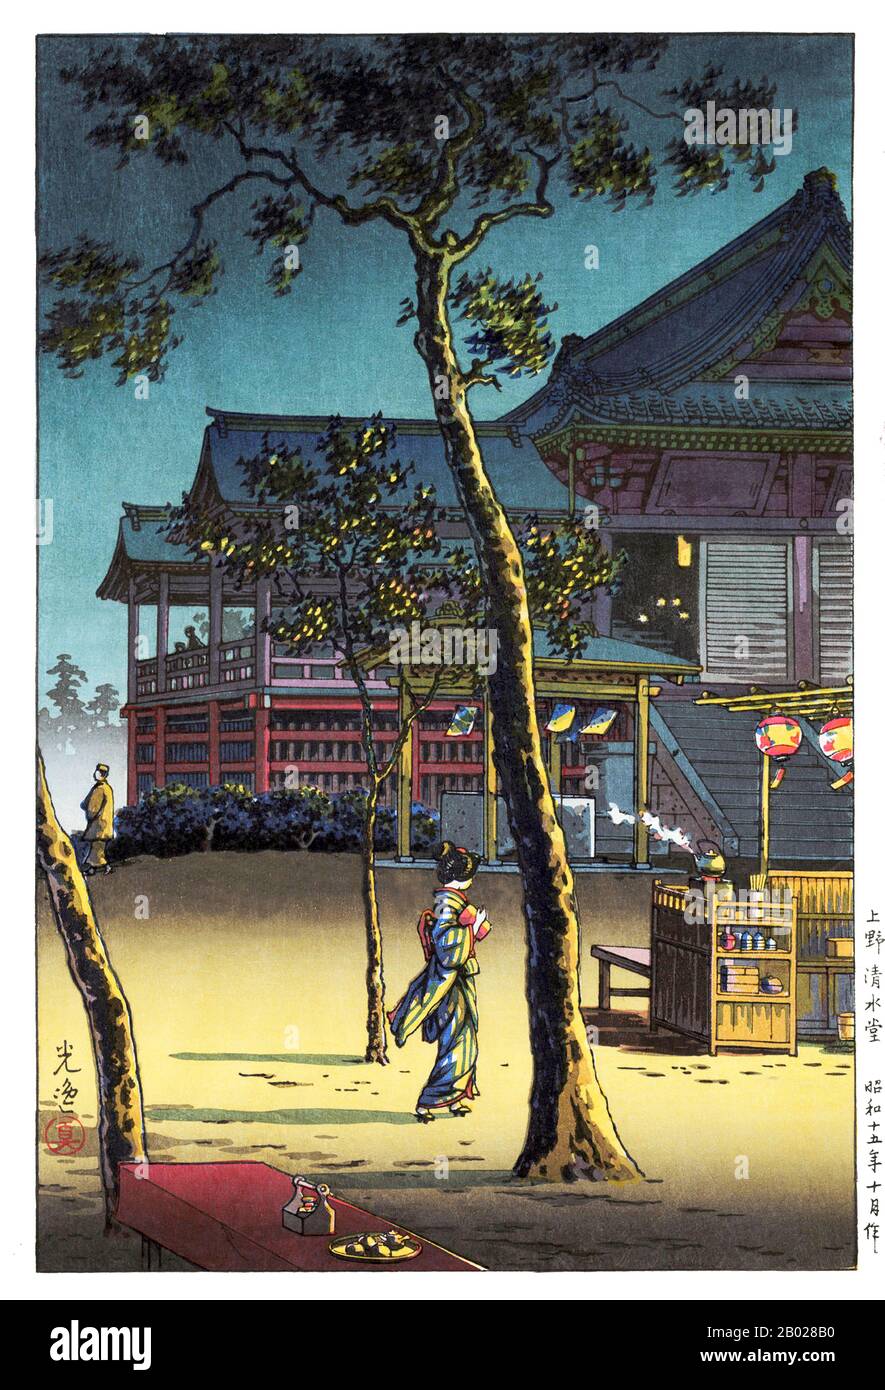 Tsuchiya Koitsu war Künstler der Shin Hanga-Bewegung. Shin hanga ("neue Drucke") war eine Kunstbewegung im Japan des frühen 20. Jahrhunderts in der Taishō- und Shōwa-Zeit, die die traditionelle ukiyo-e-Kunst, die in der Edo- und Meiji-Zeit (17. Bis 19. Jahrhundert) verwurzelt war, revitalisierte. Die Bewegung florierte von etwa von 1915 bis 1942, obwohl sie von 1946 bis in die 1950er Jahre kurzzeitig wieder aufgenommen wurde. Inspiriert vom europäischen Impressionismus haben die Künstler westliche Elemente wie die Auswirkungen des Lichts und den Ausdruck individueller Stimmungen integriert, konzentrierten sich aber auf streng traditionelle Themen der Landschaften (fukeiga), berühmter Ort Stockfoto